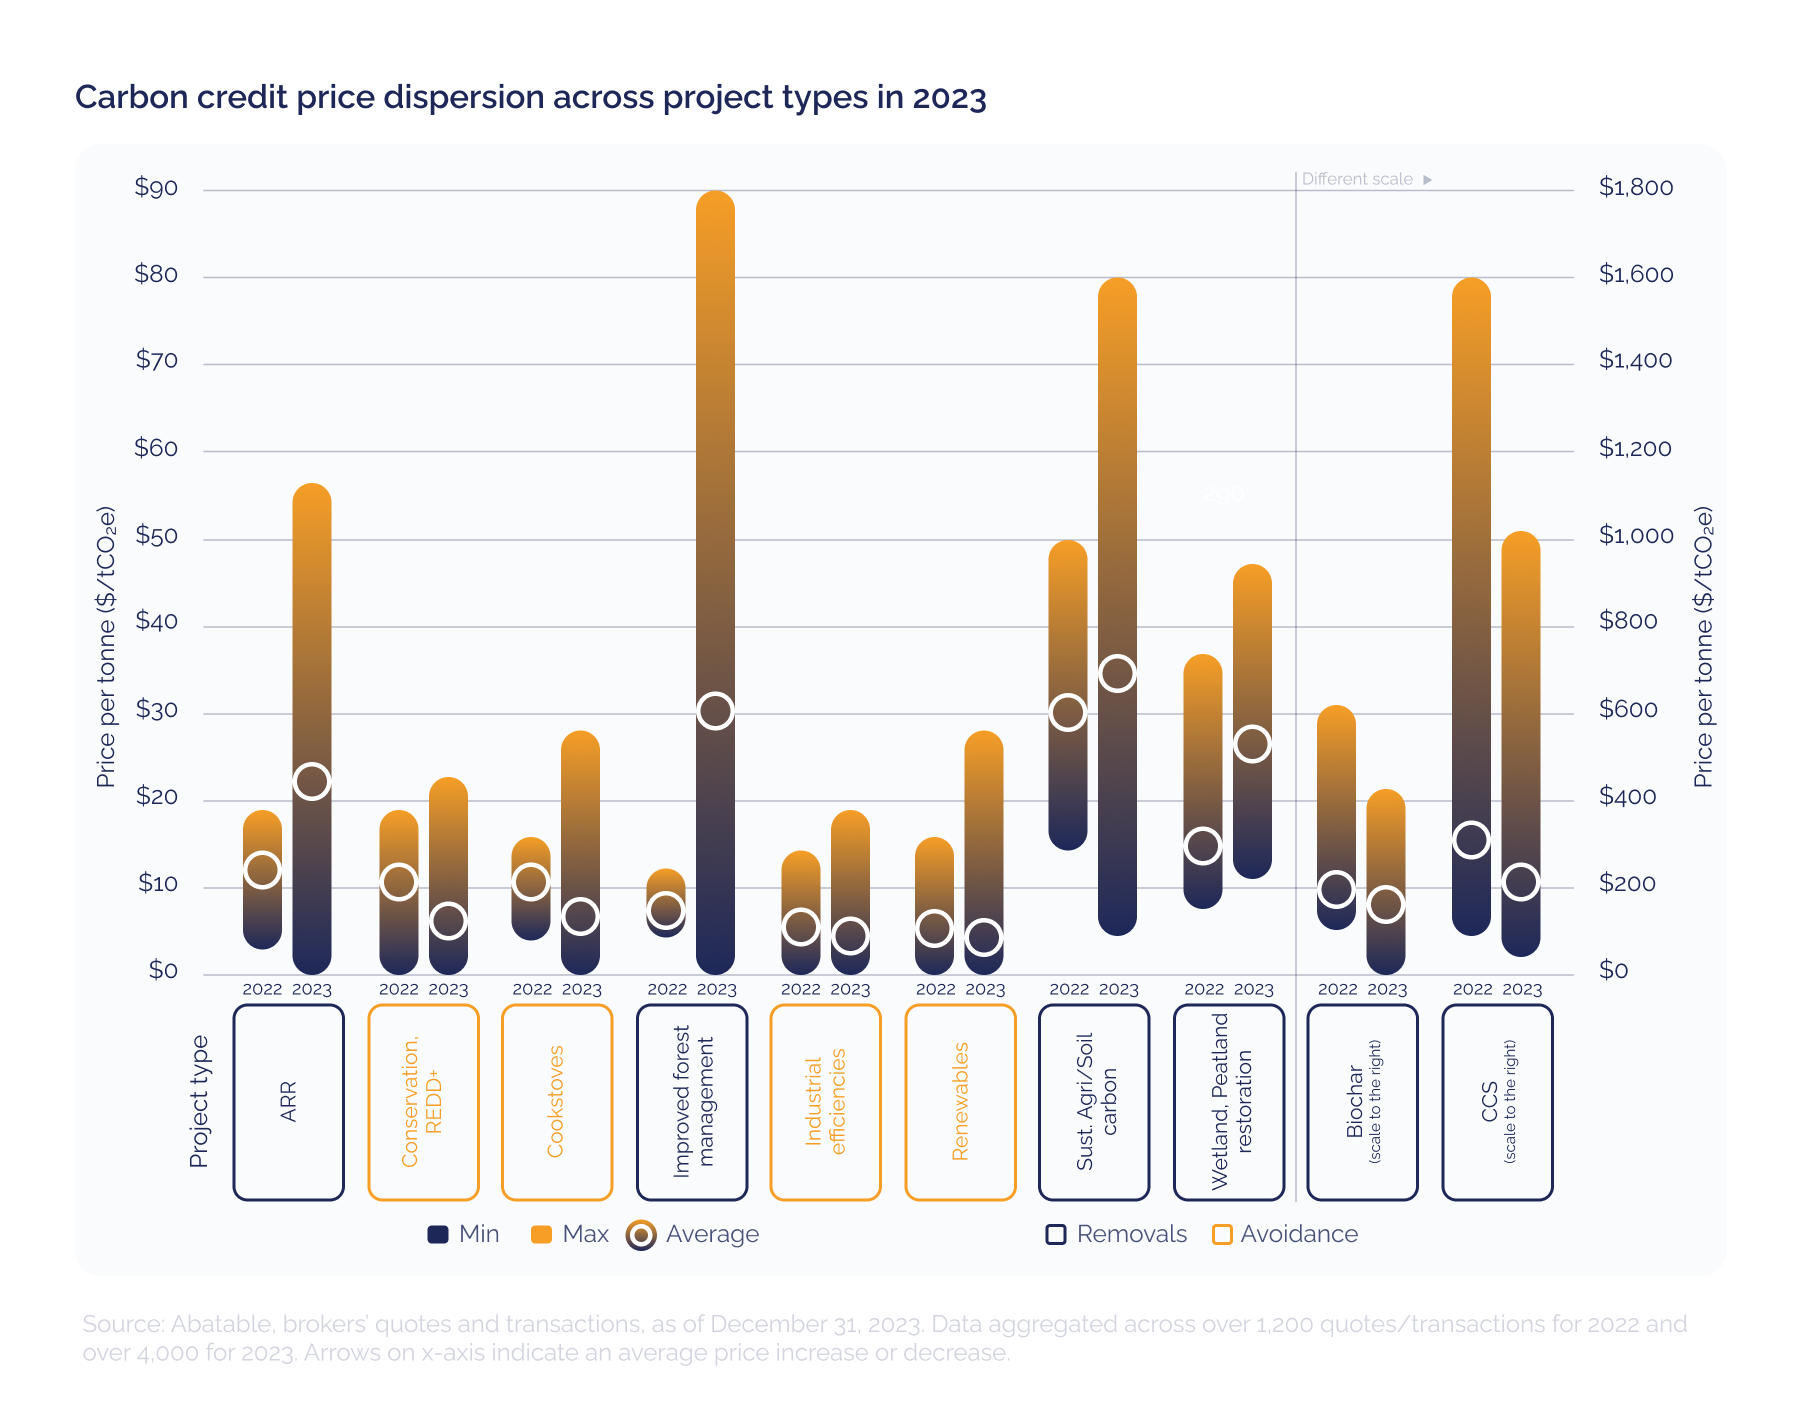 2023 yılında proje türlerine göre karbon kredisi fiyat dağılımı